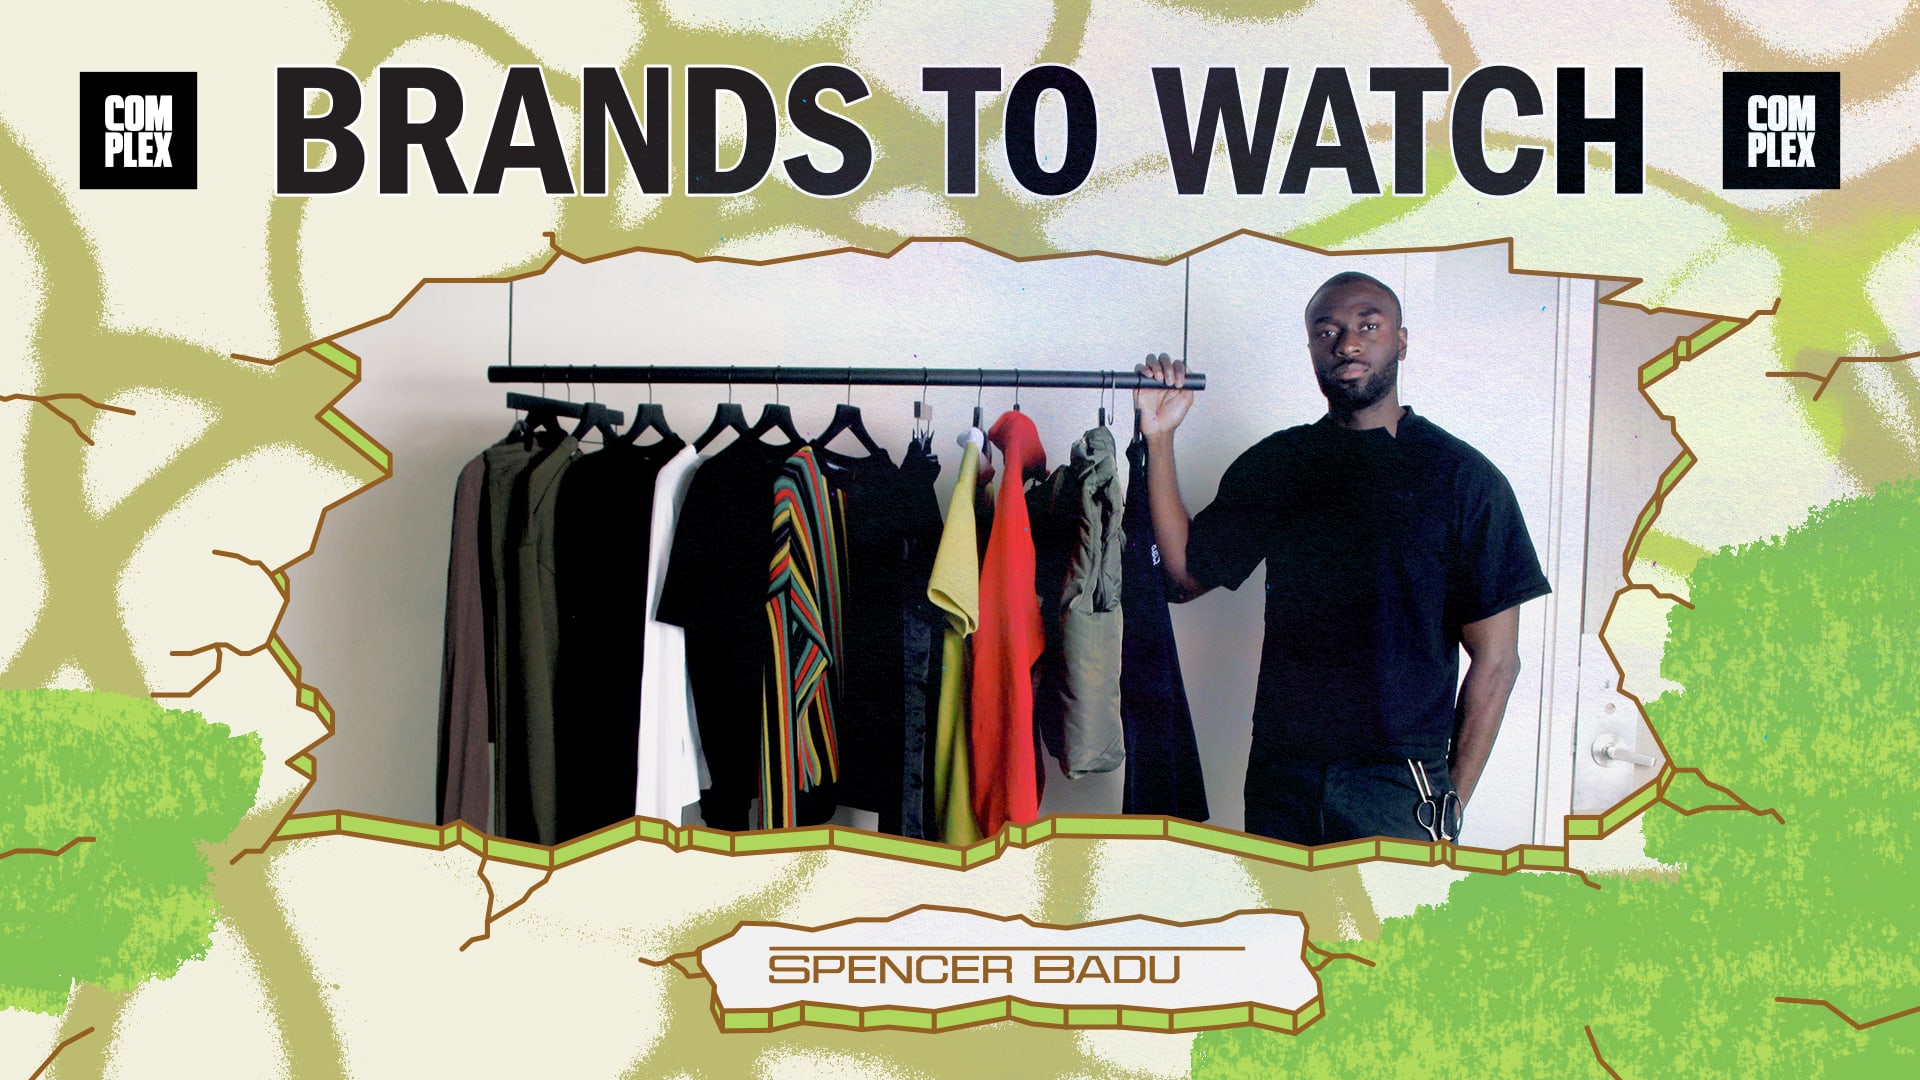 ComplexCon Brands to Watch Spencer Badu